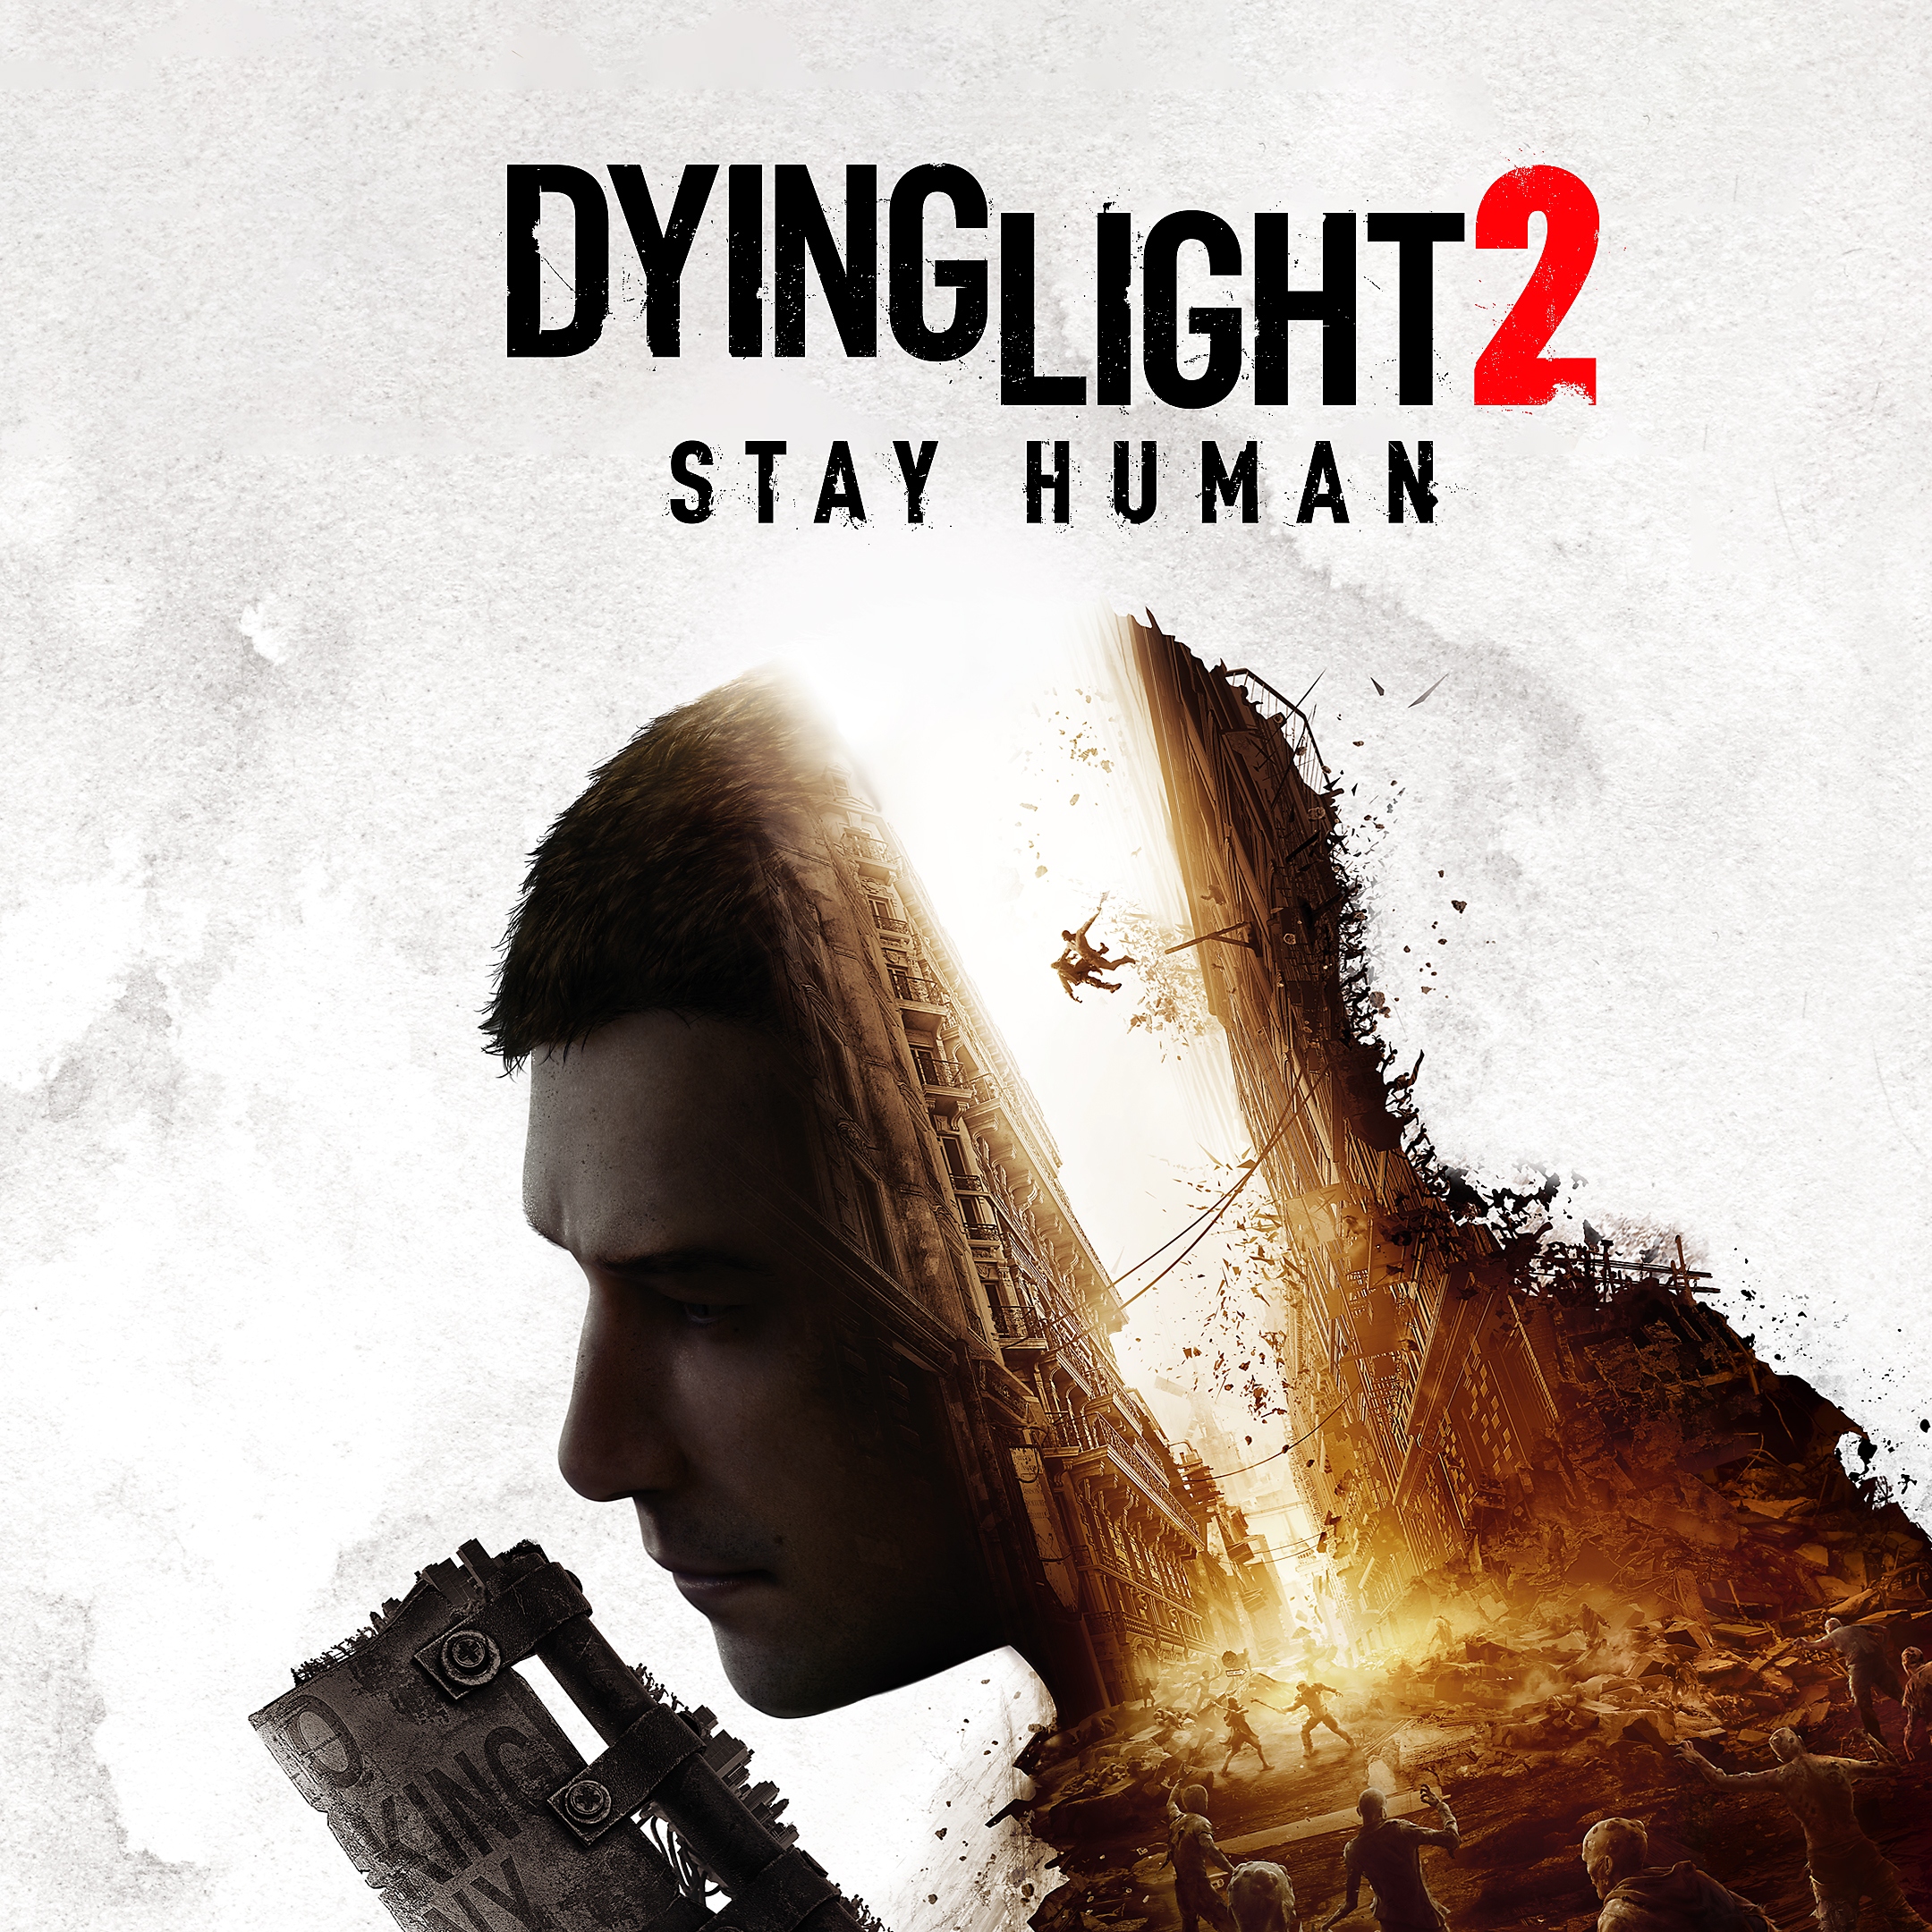 Dying light 2 stay human – sličica v trgovini